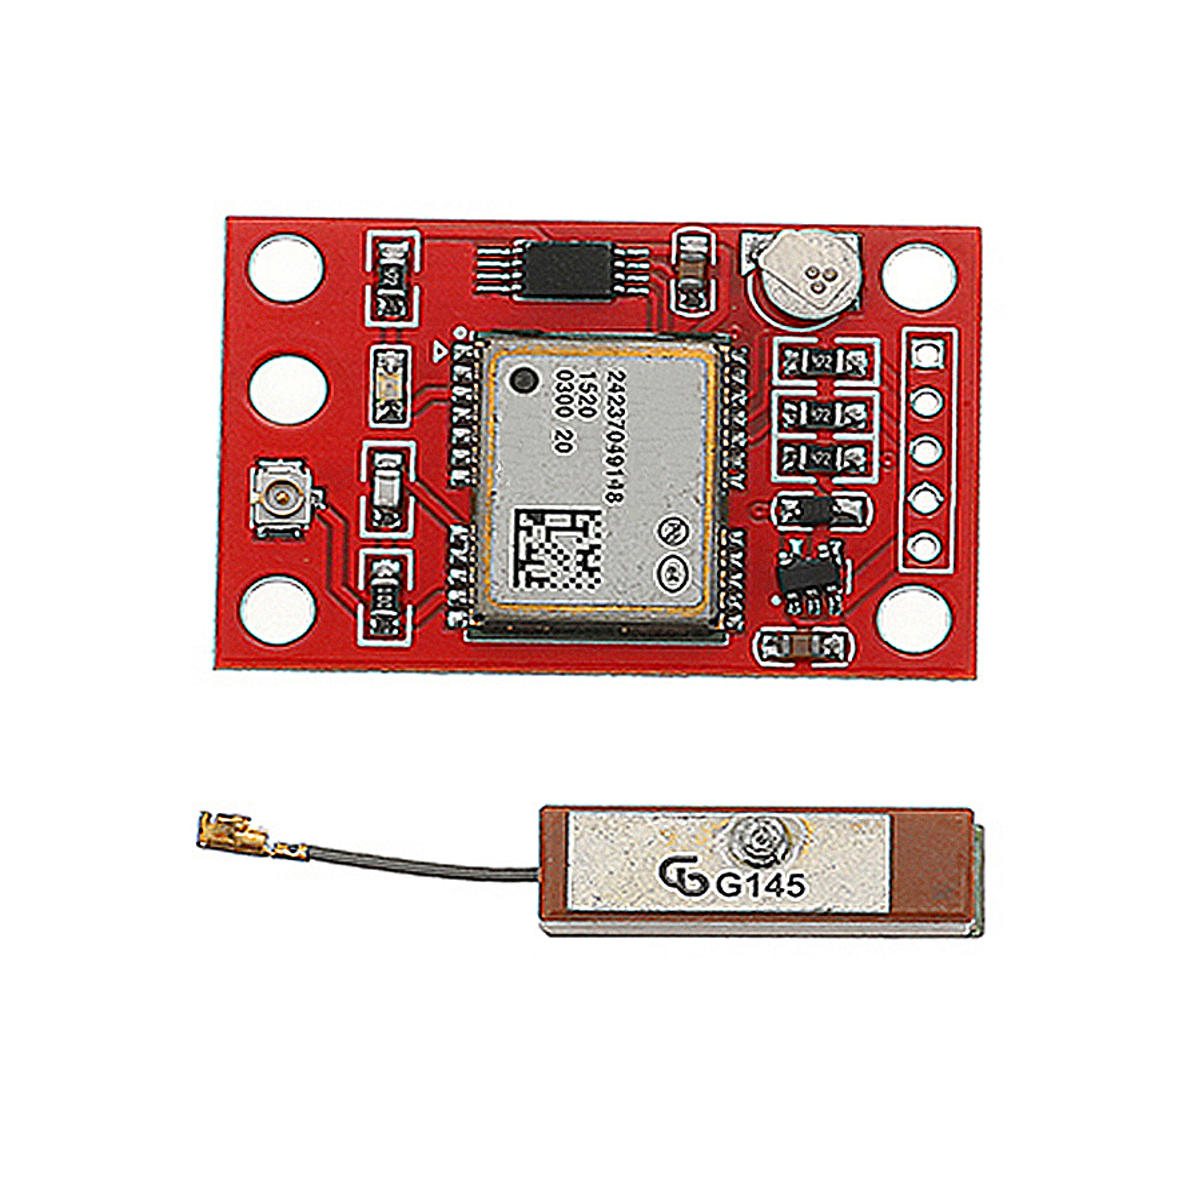 3 stks GY GPS modulekaart 9600 baudrate met antenne Geekcreit voor Arduino - producten die werken me